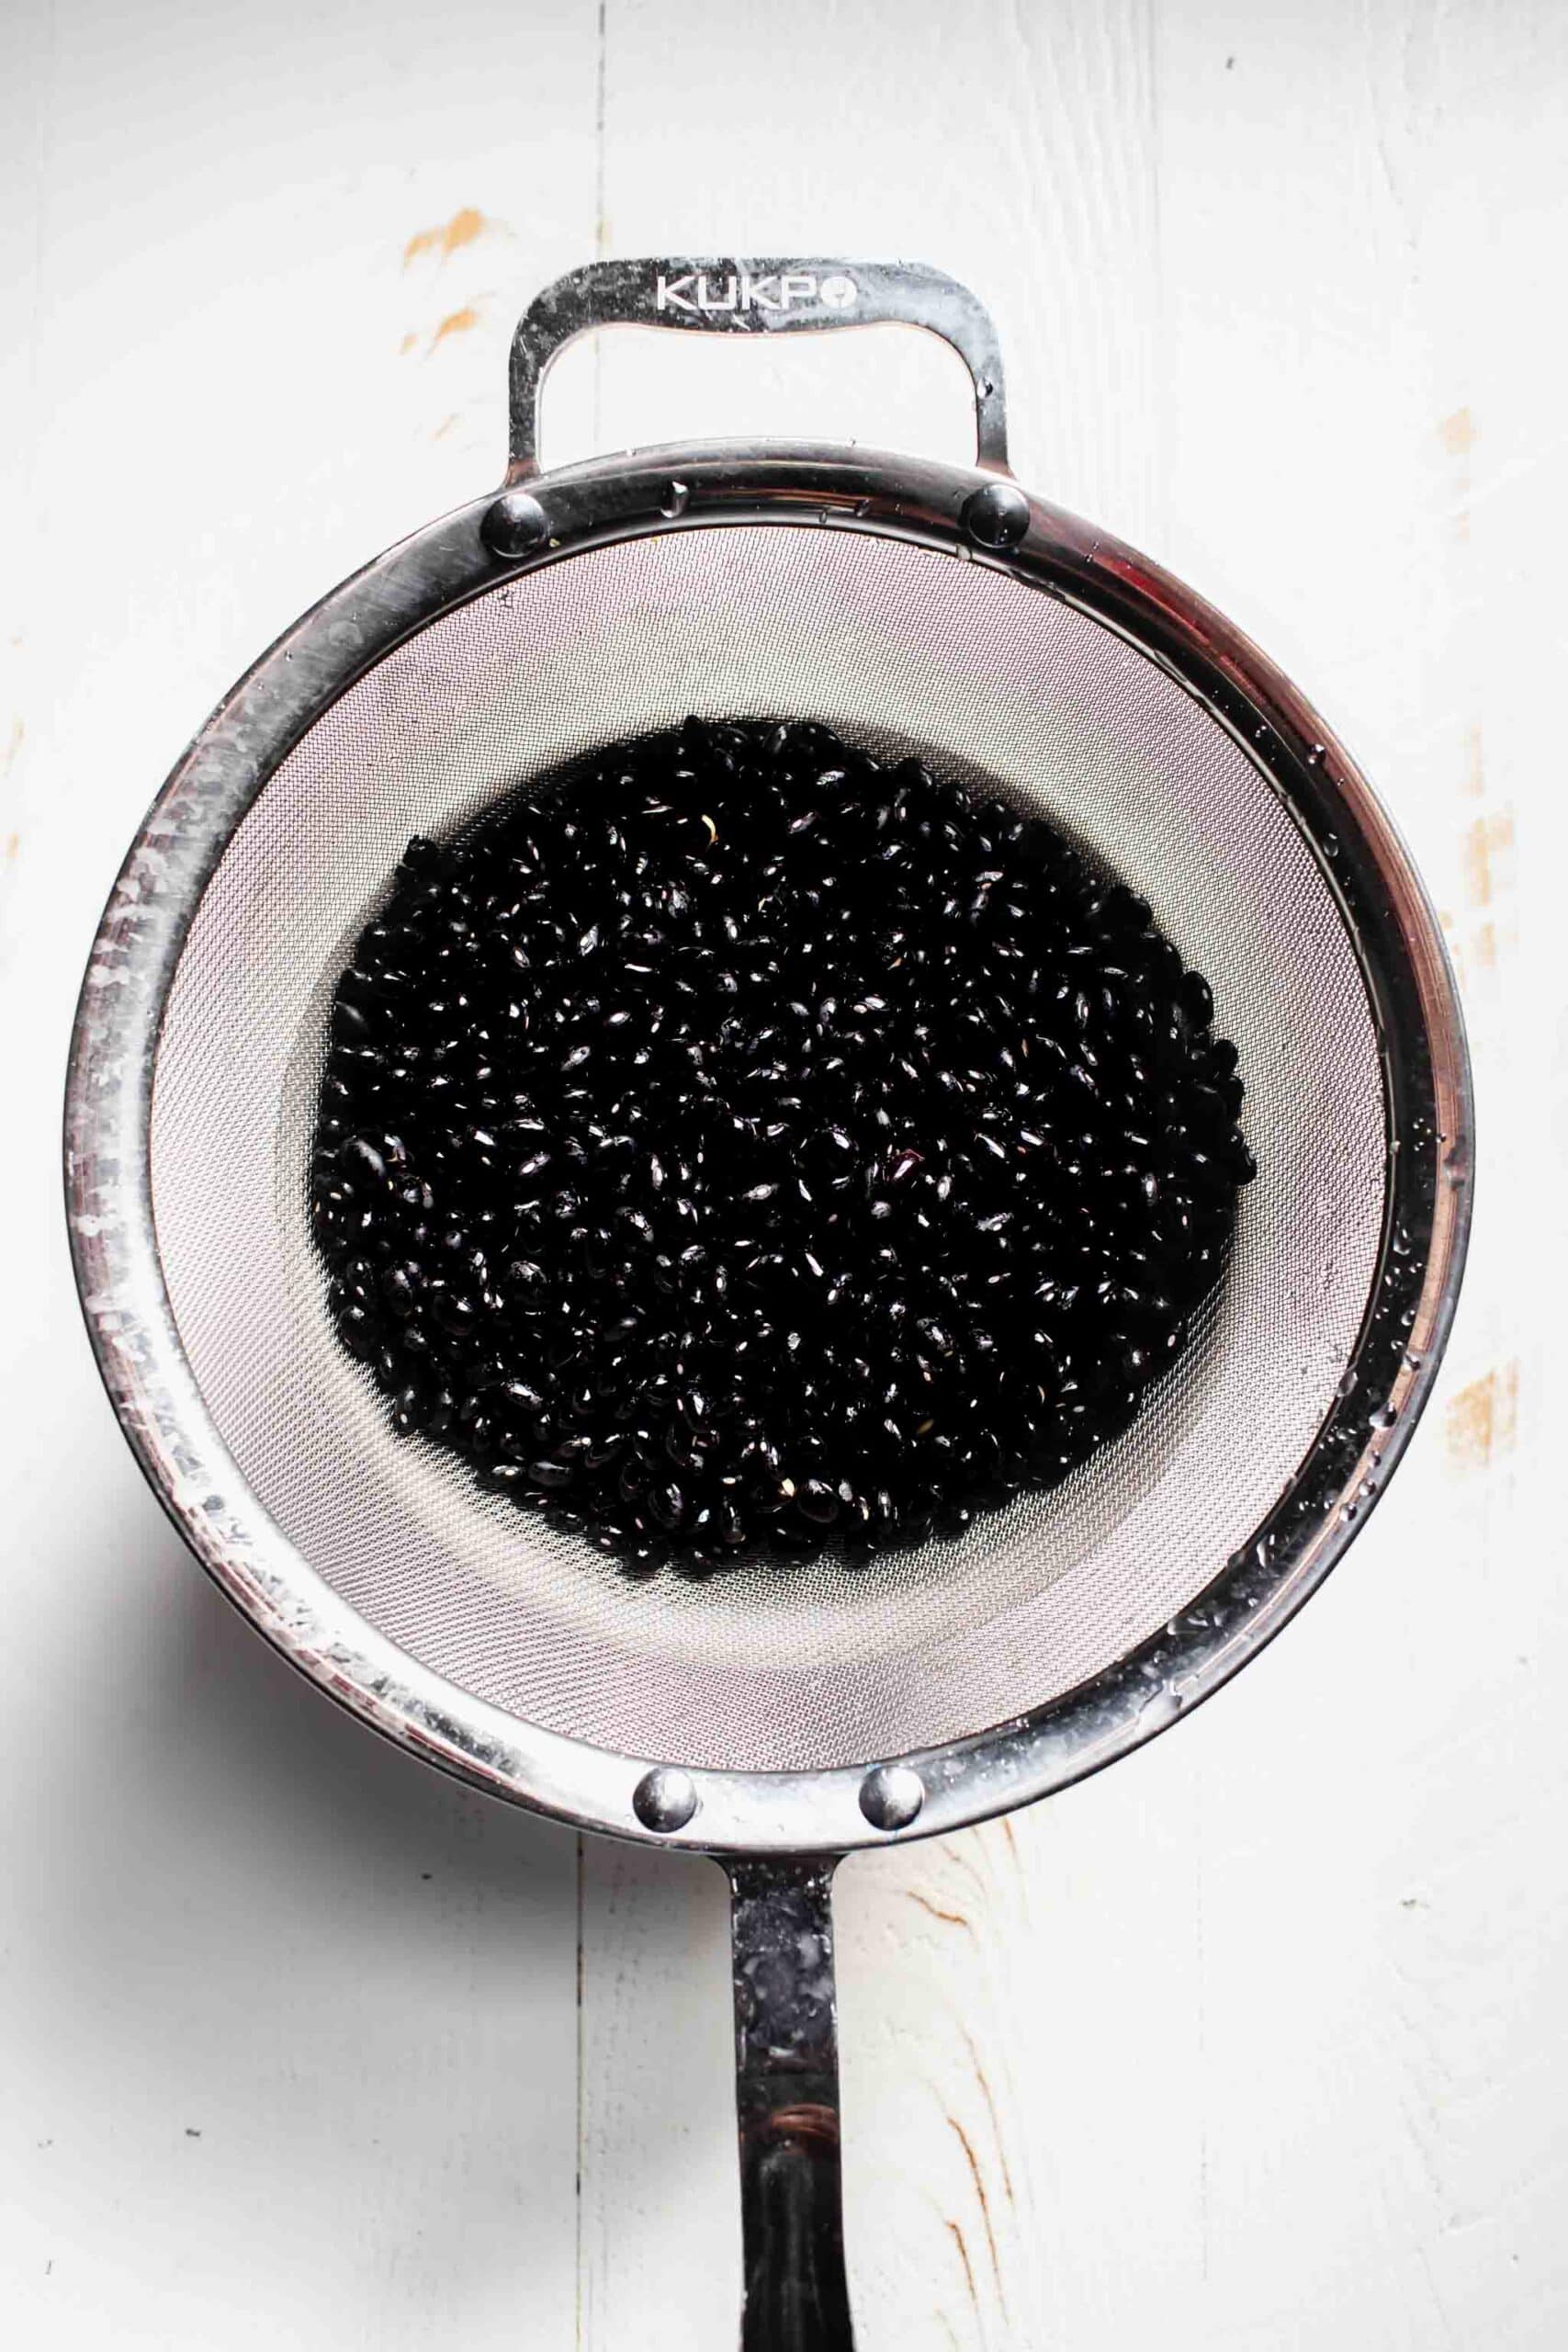 Black beans in strainer. 